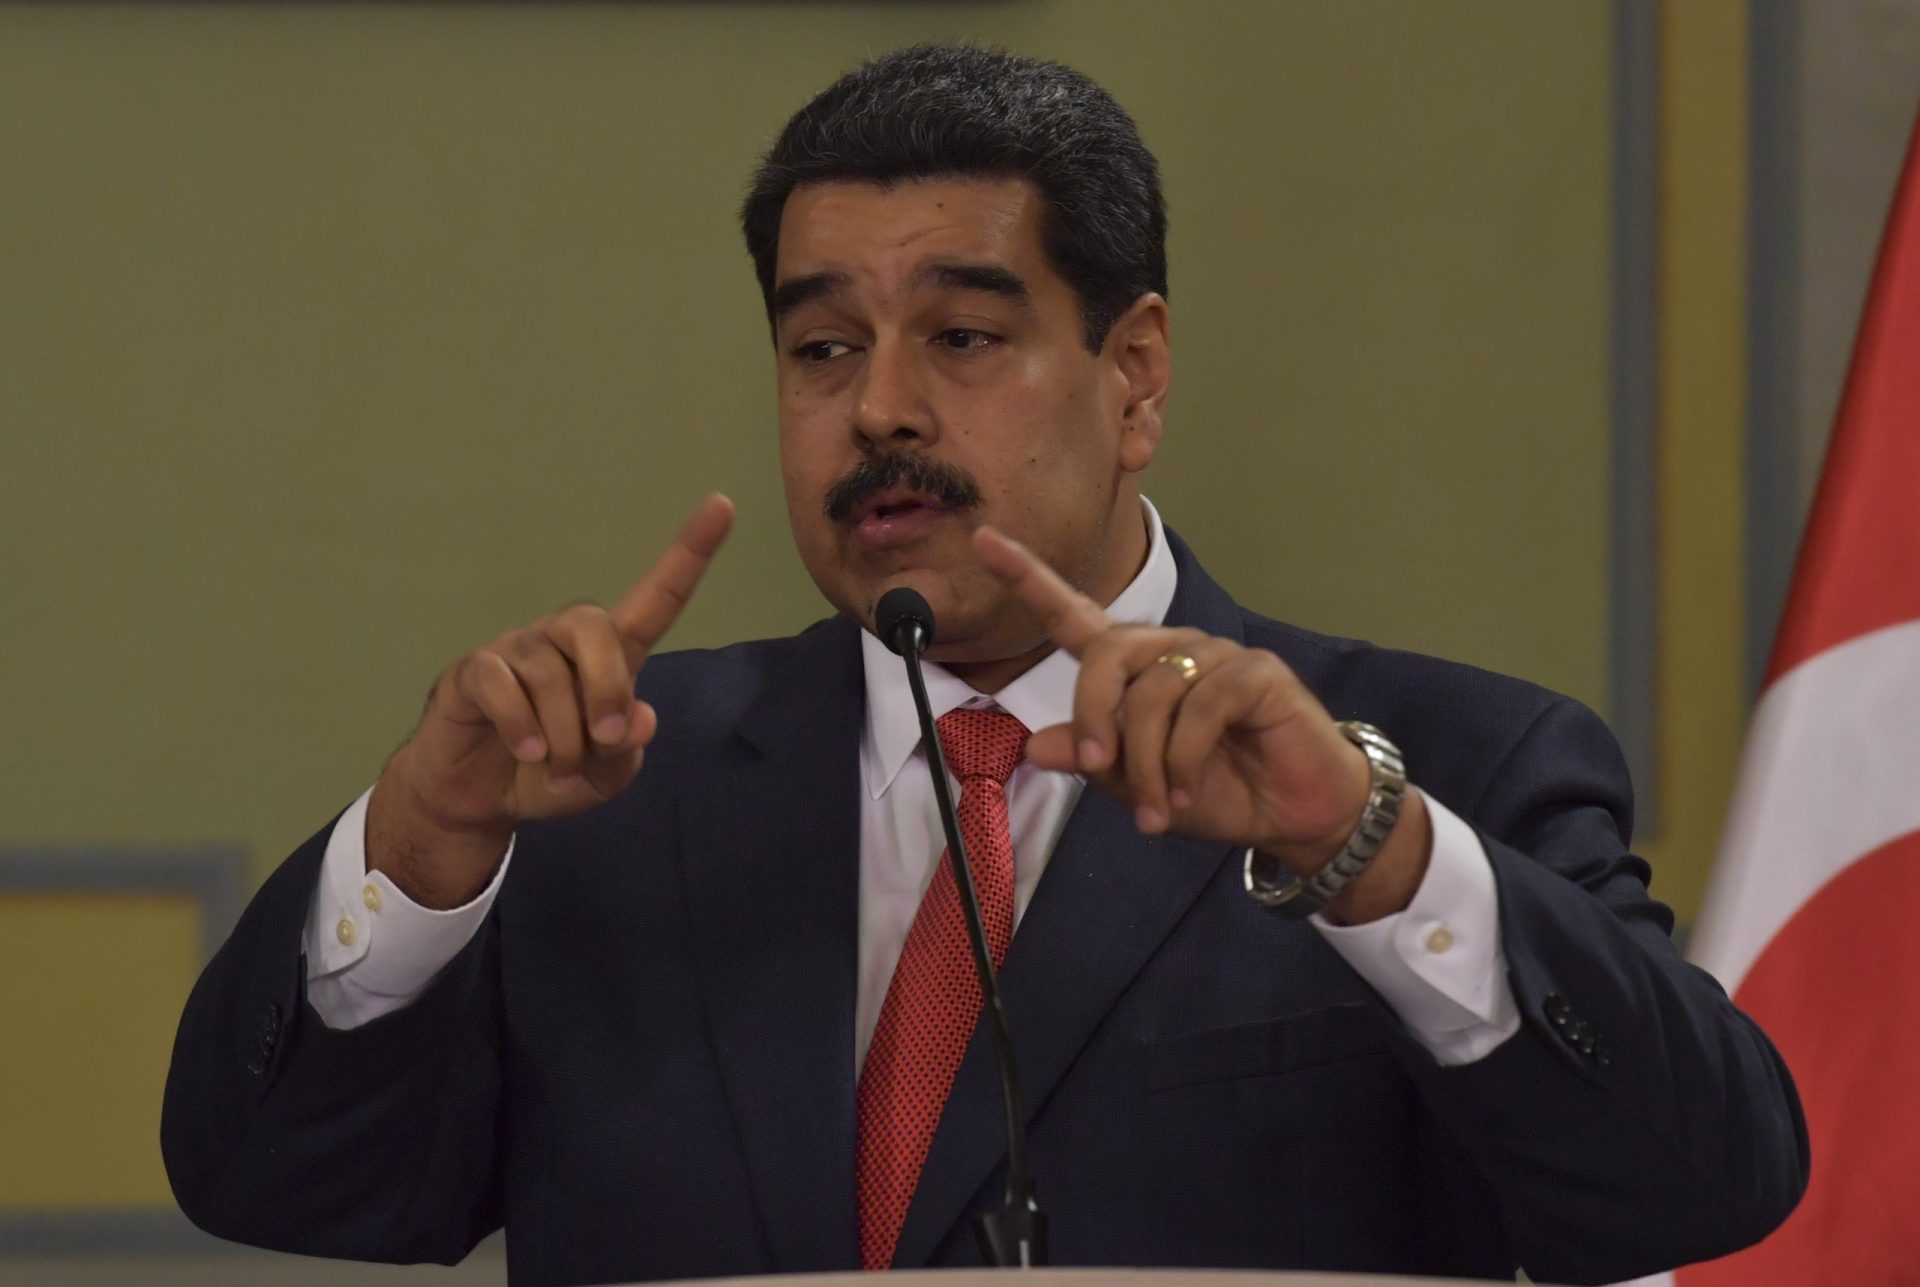 Interpol nega estar a investigar governo Venezuelano